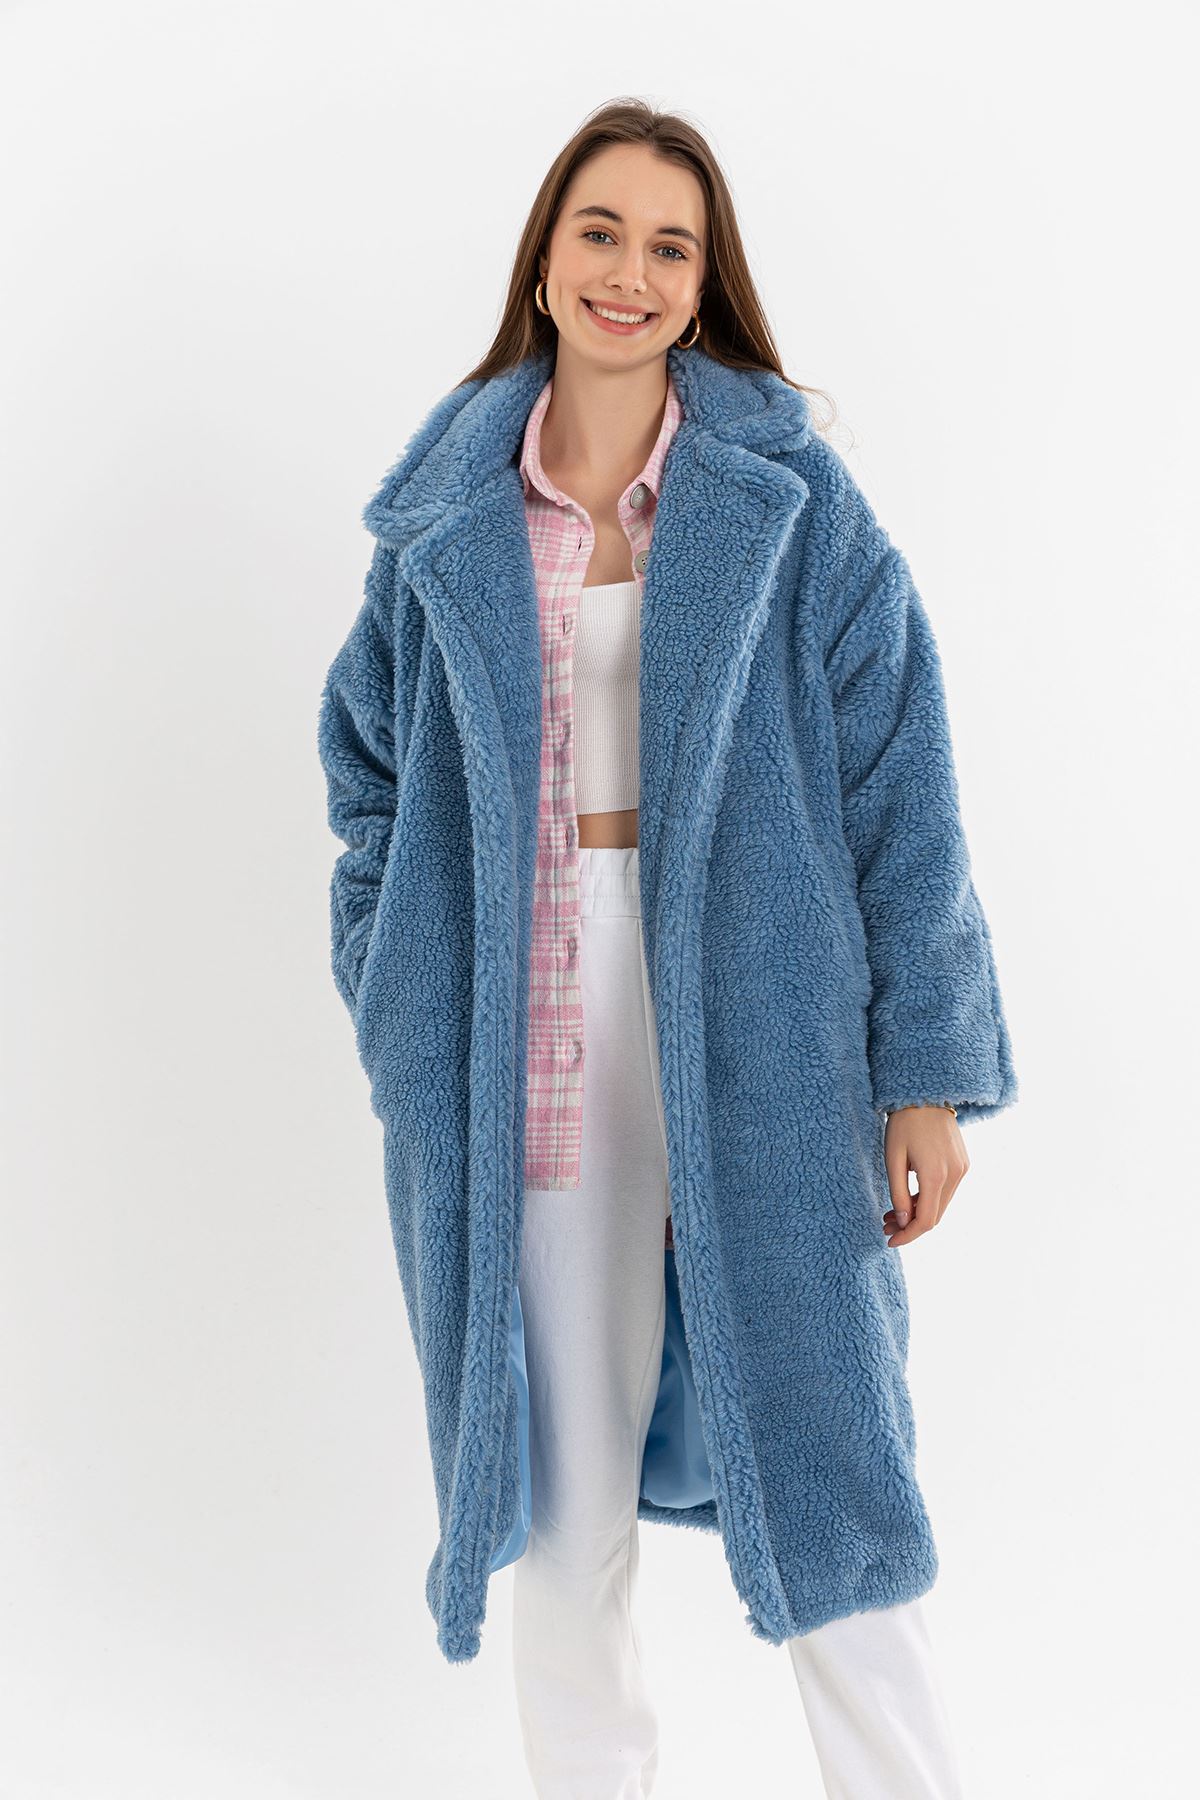 Teddy Kumaş Ceket Yaka Diz Altı Boy Oversize/Salaş Kadın Kaban-Mavi